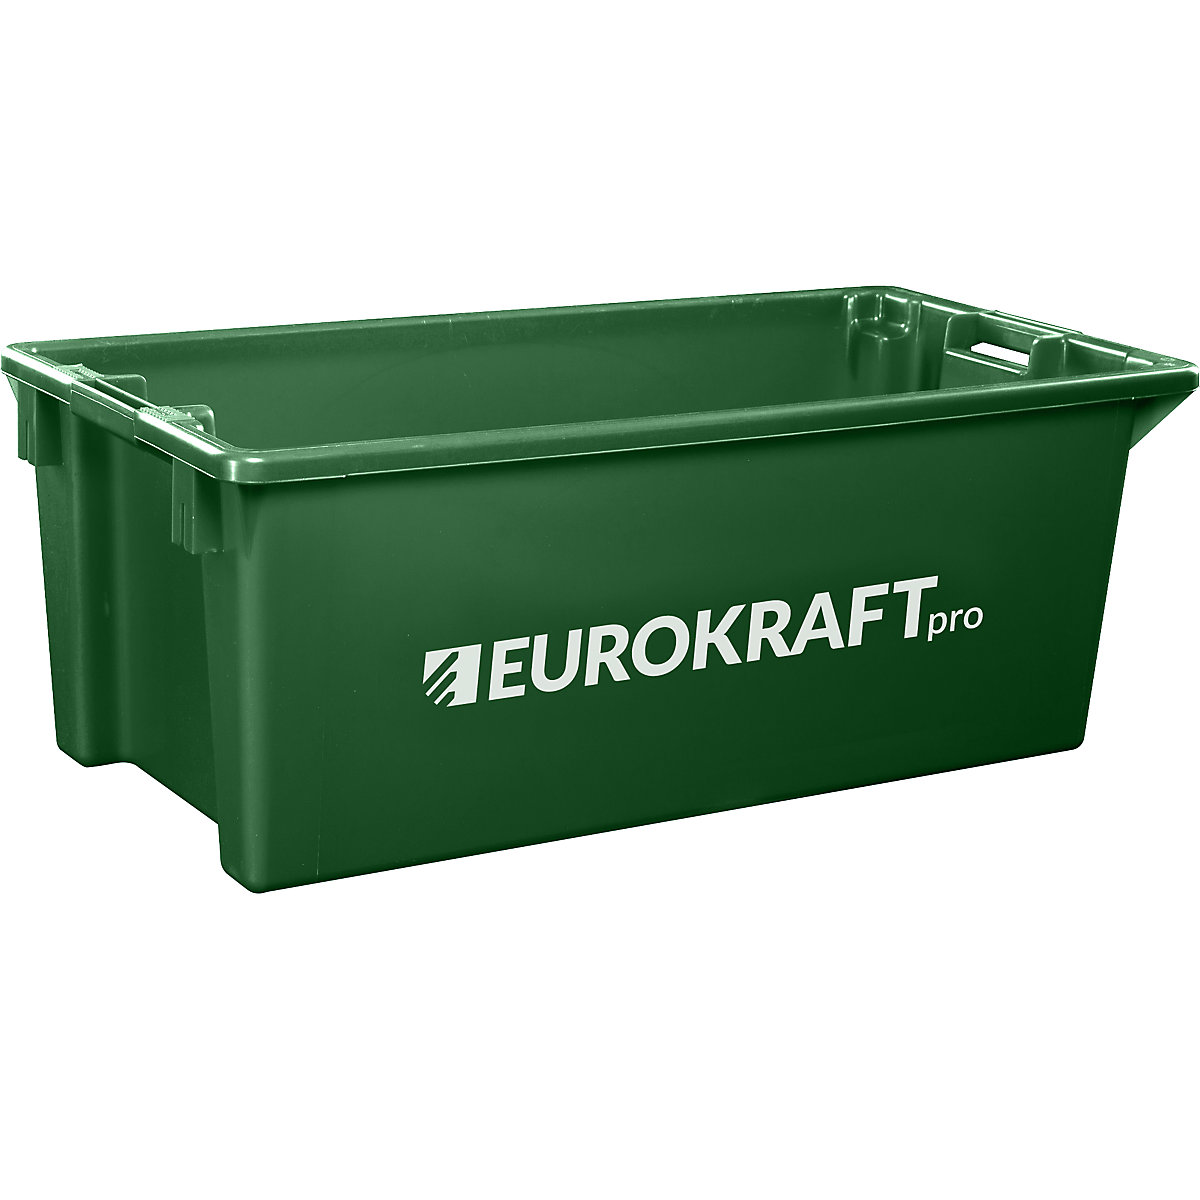 Recipiente empilhável giratório em polipropileno próprio para alimentos – eurokraft pro, capacidade 13 litros, UE 4 unid., paredes e fundo fechados, verde